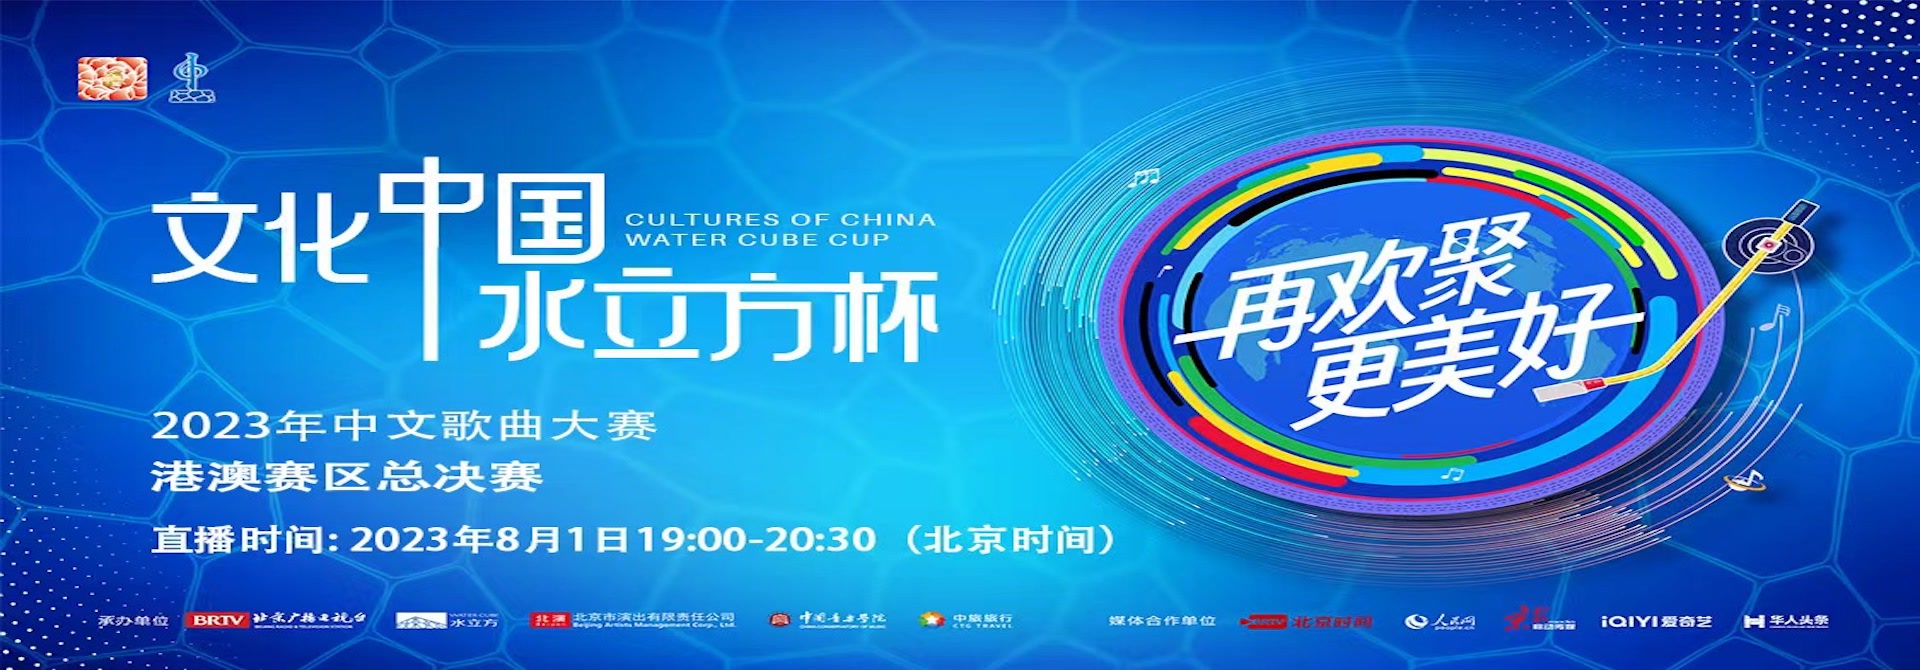 2023年“文化中国·水立方杯”中文歌曲大赛-港澳赛总决赛